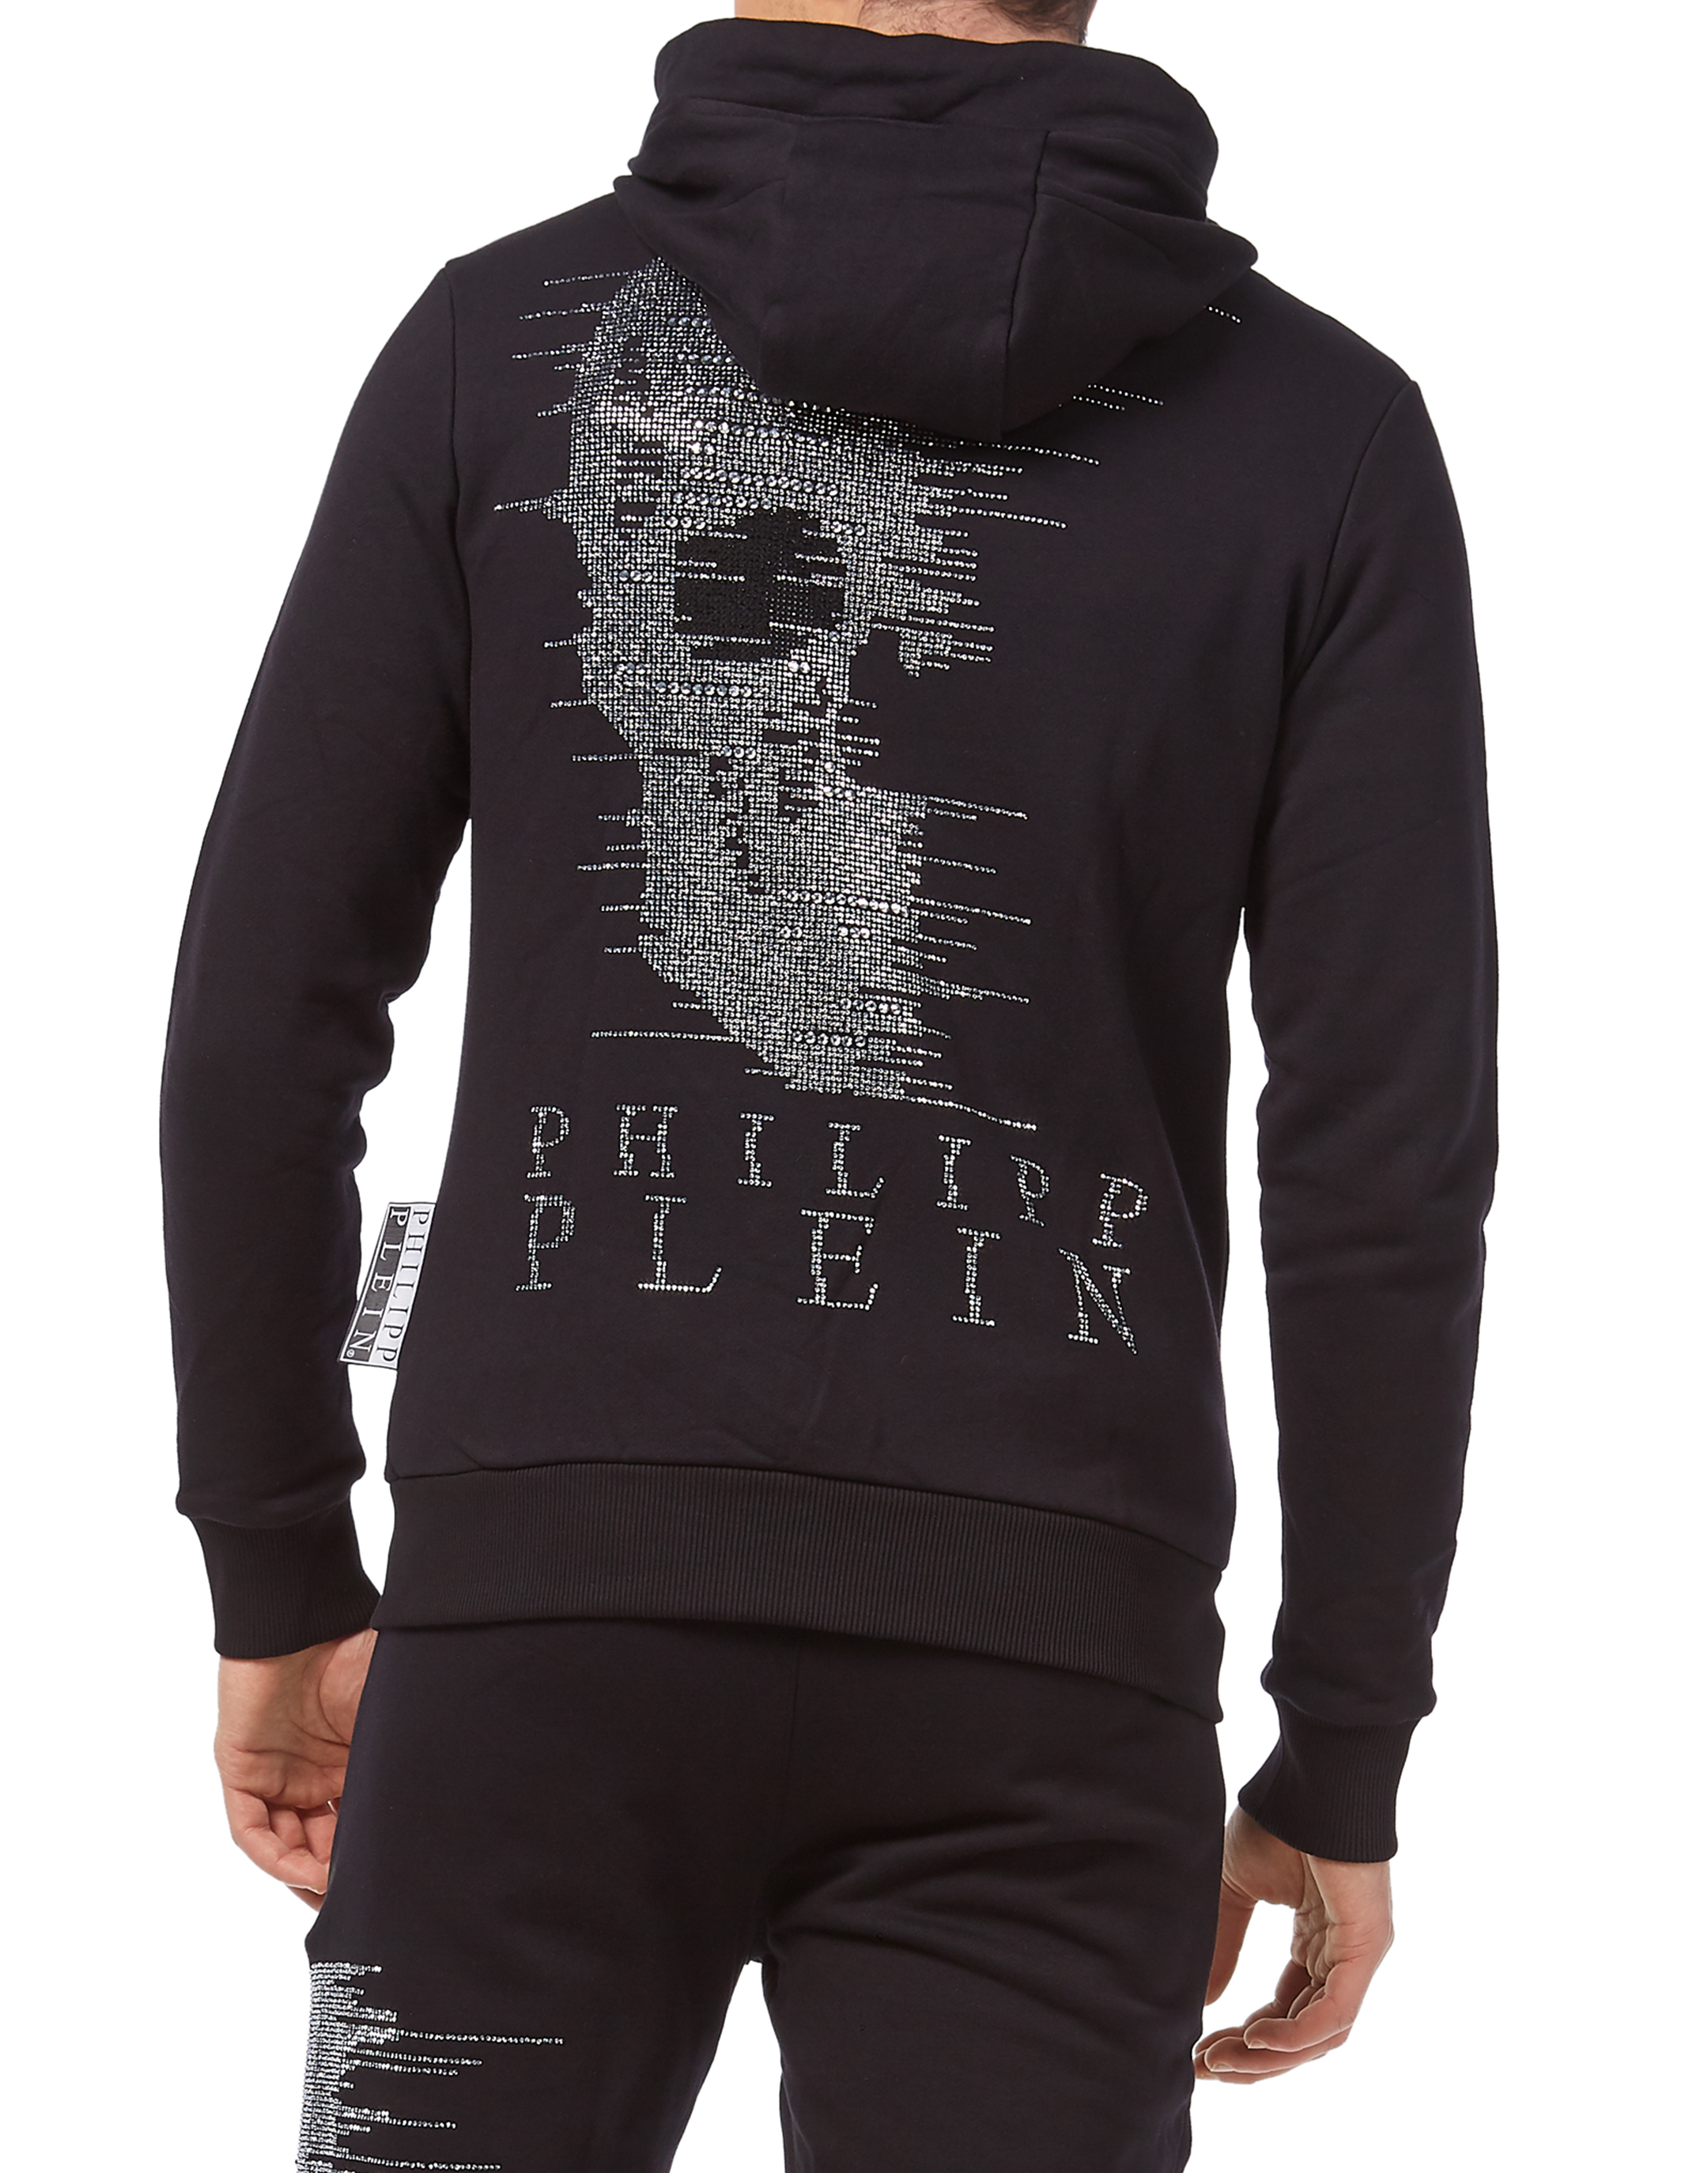 philipp plein skull hoodie